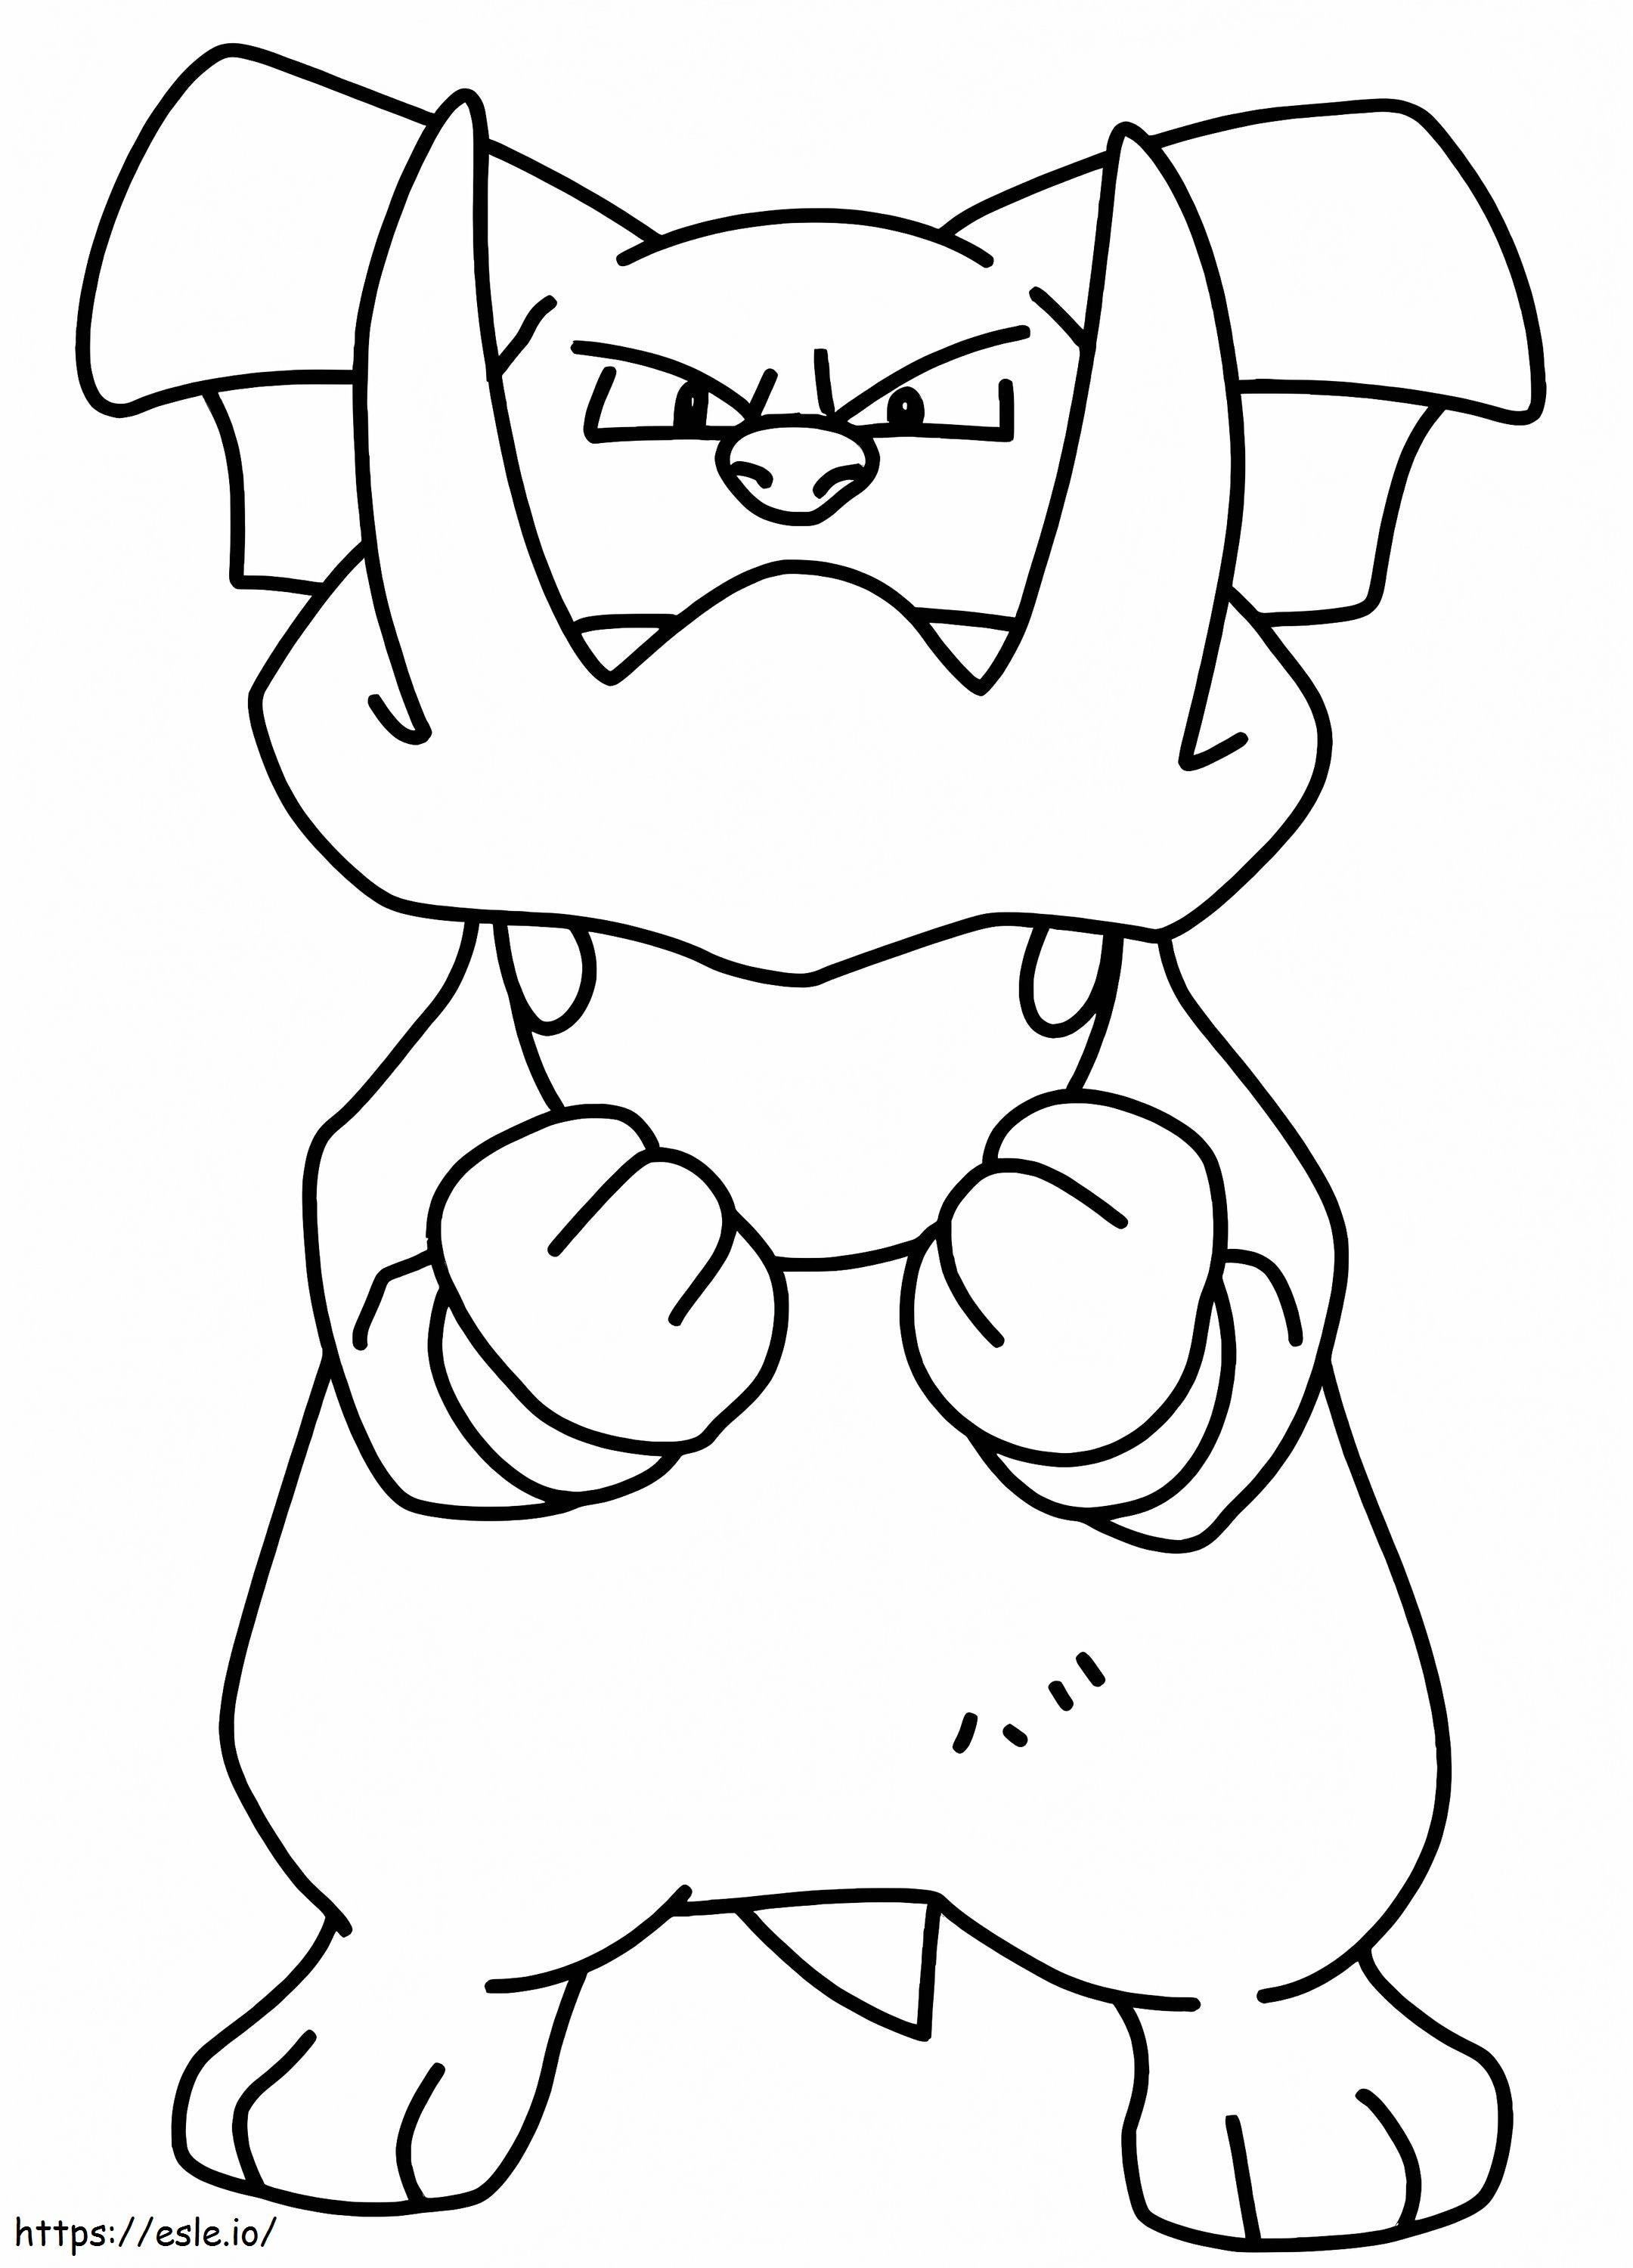 Granbull in Pokémon ausmalbilder